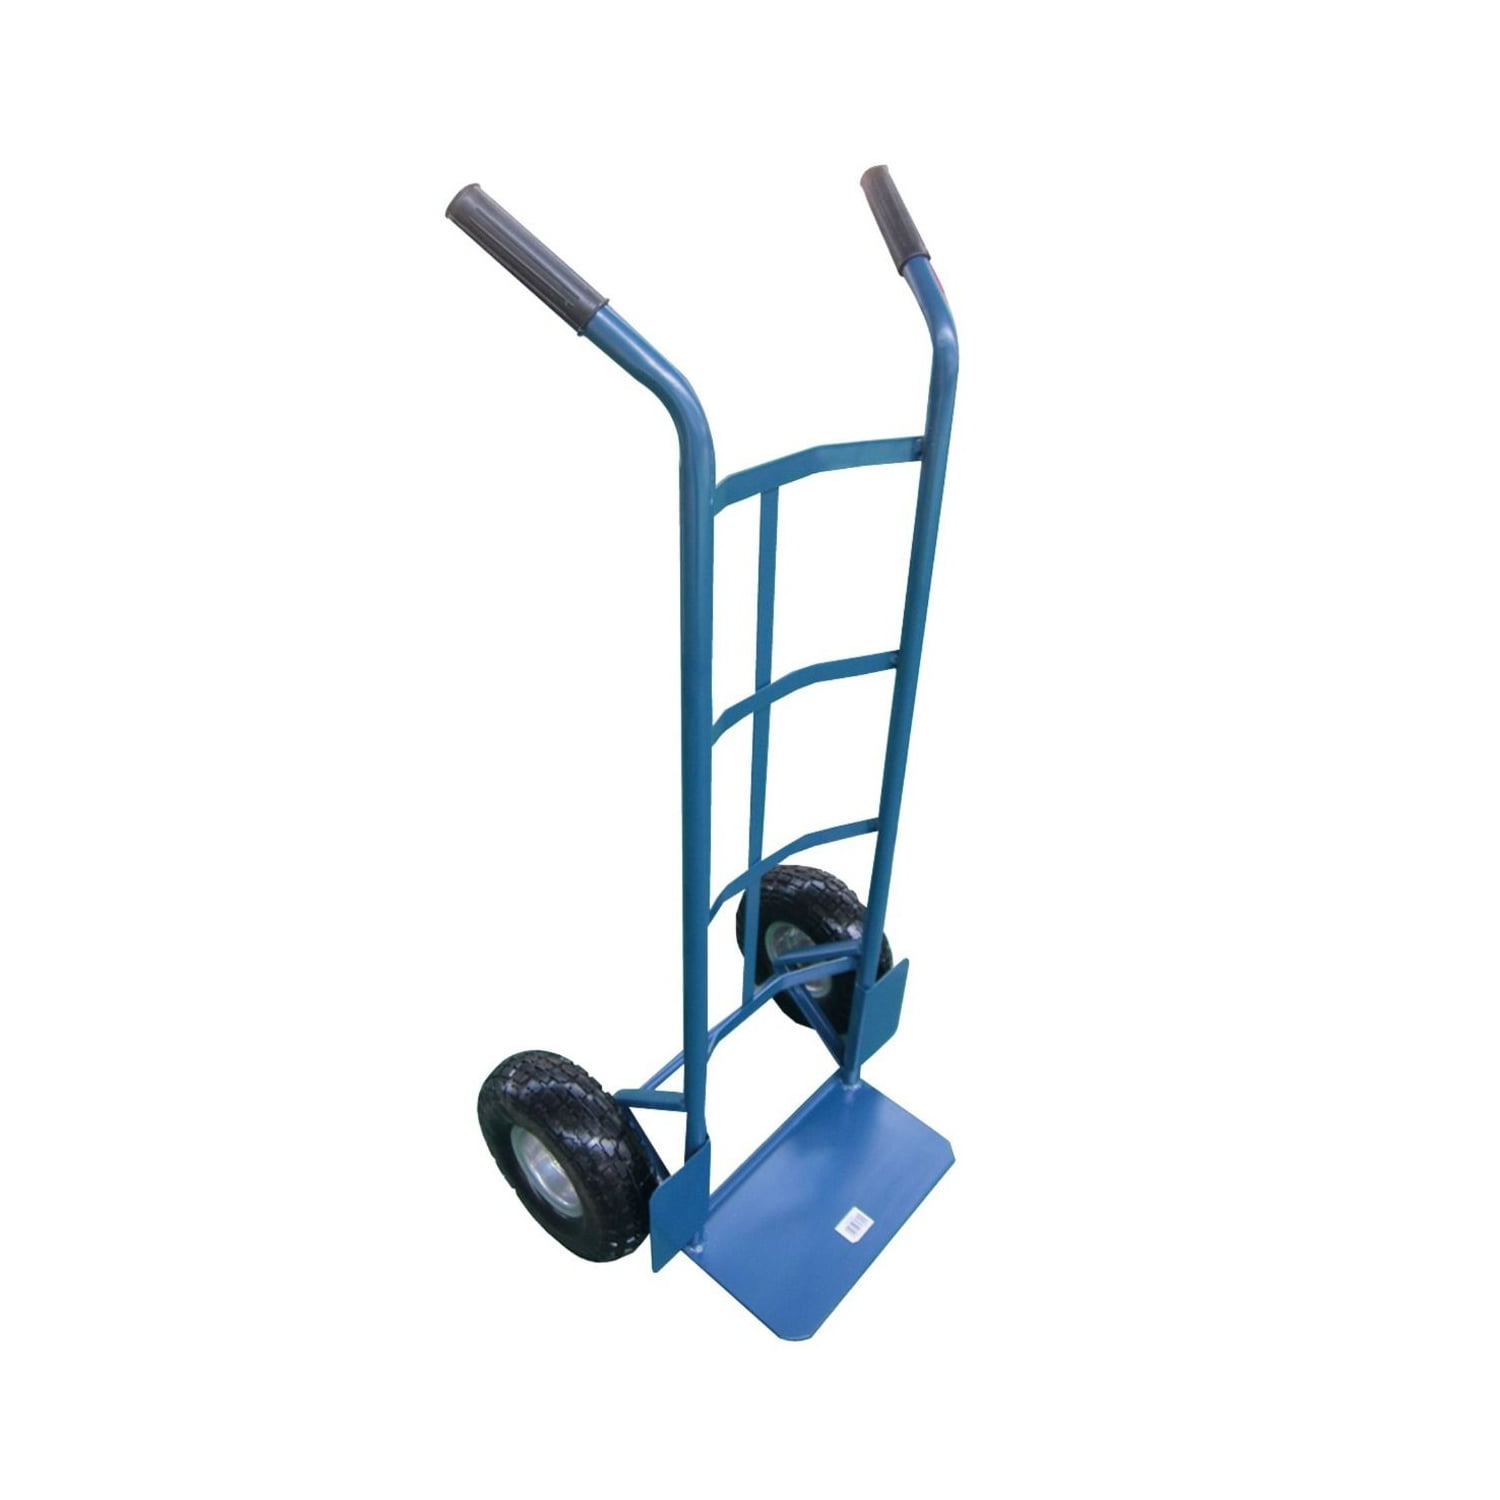 Transportna kolica nosivosti 200kg 1237287 - masineialati.ba -  Profesionalni i hobi alati i mašine